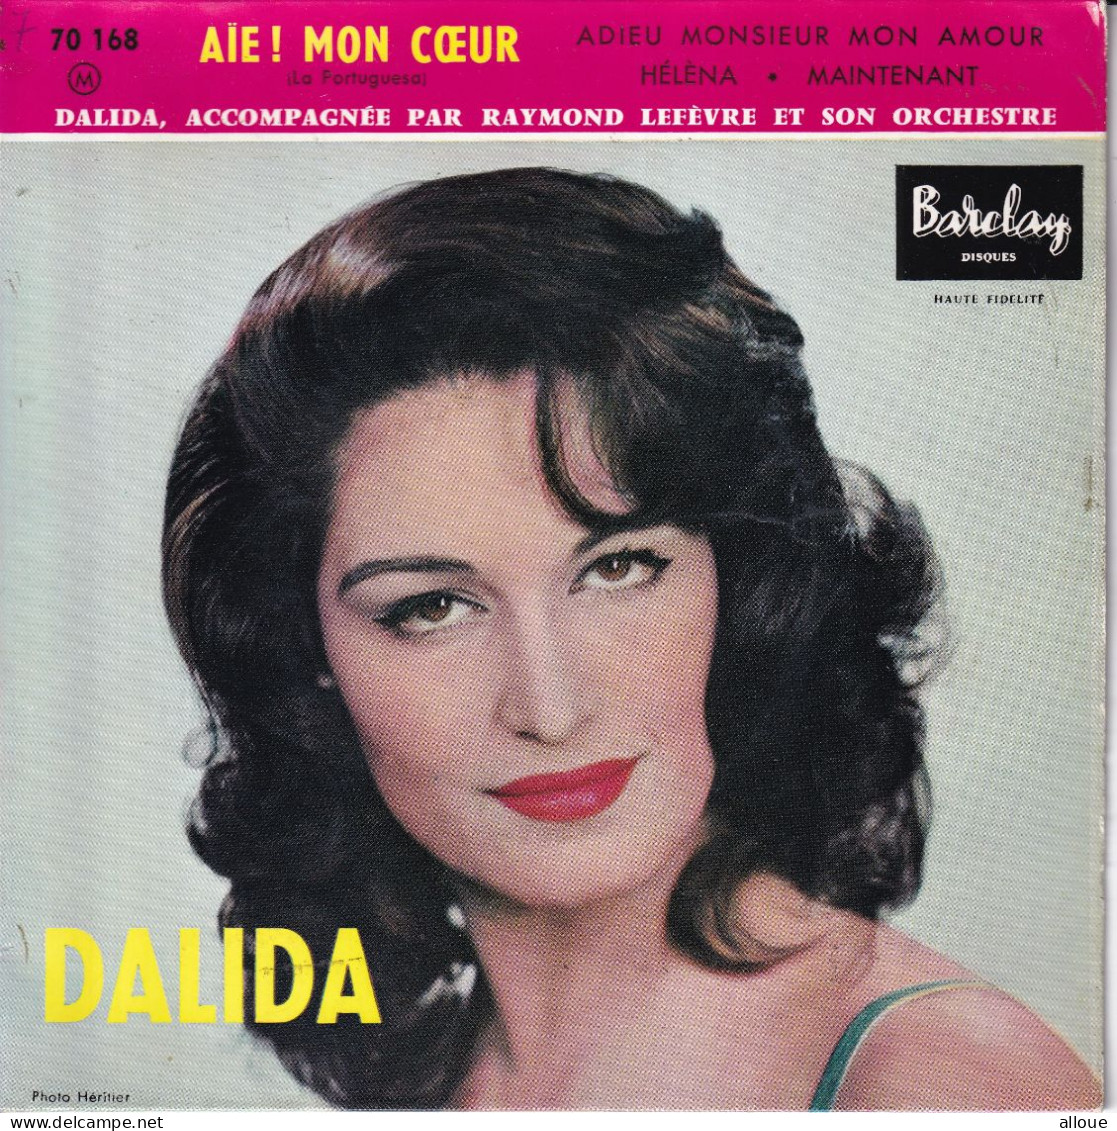 DALIDA - FR EP - AIE! MON COEUR + 3 - Autres - Musique Française